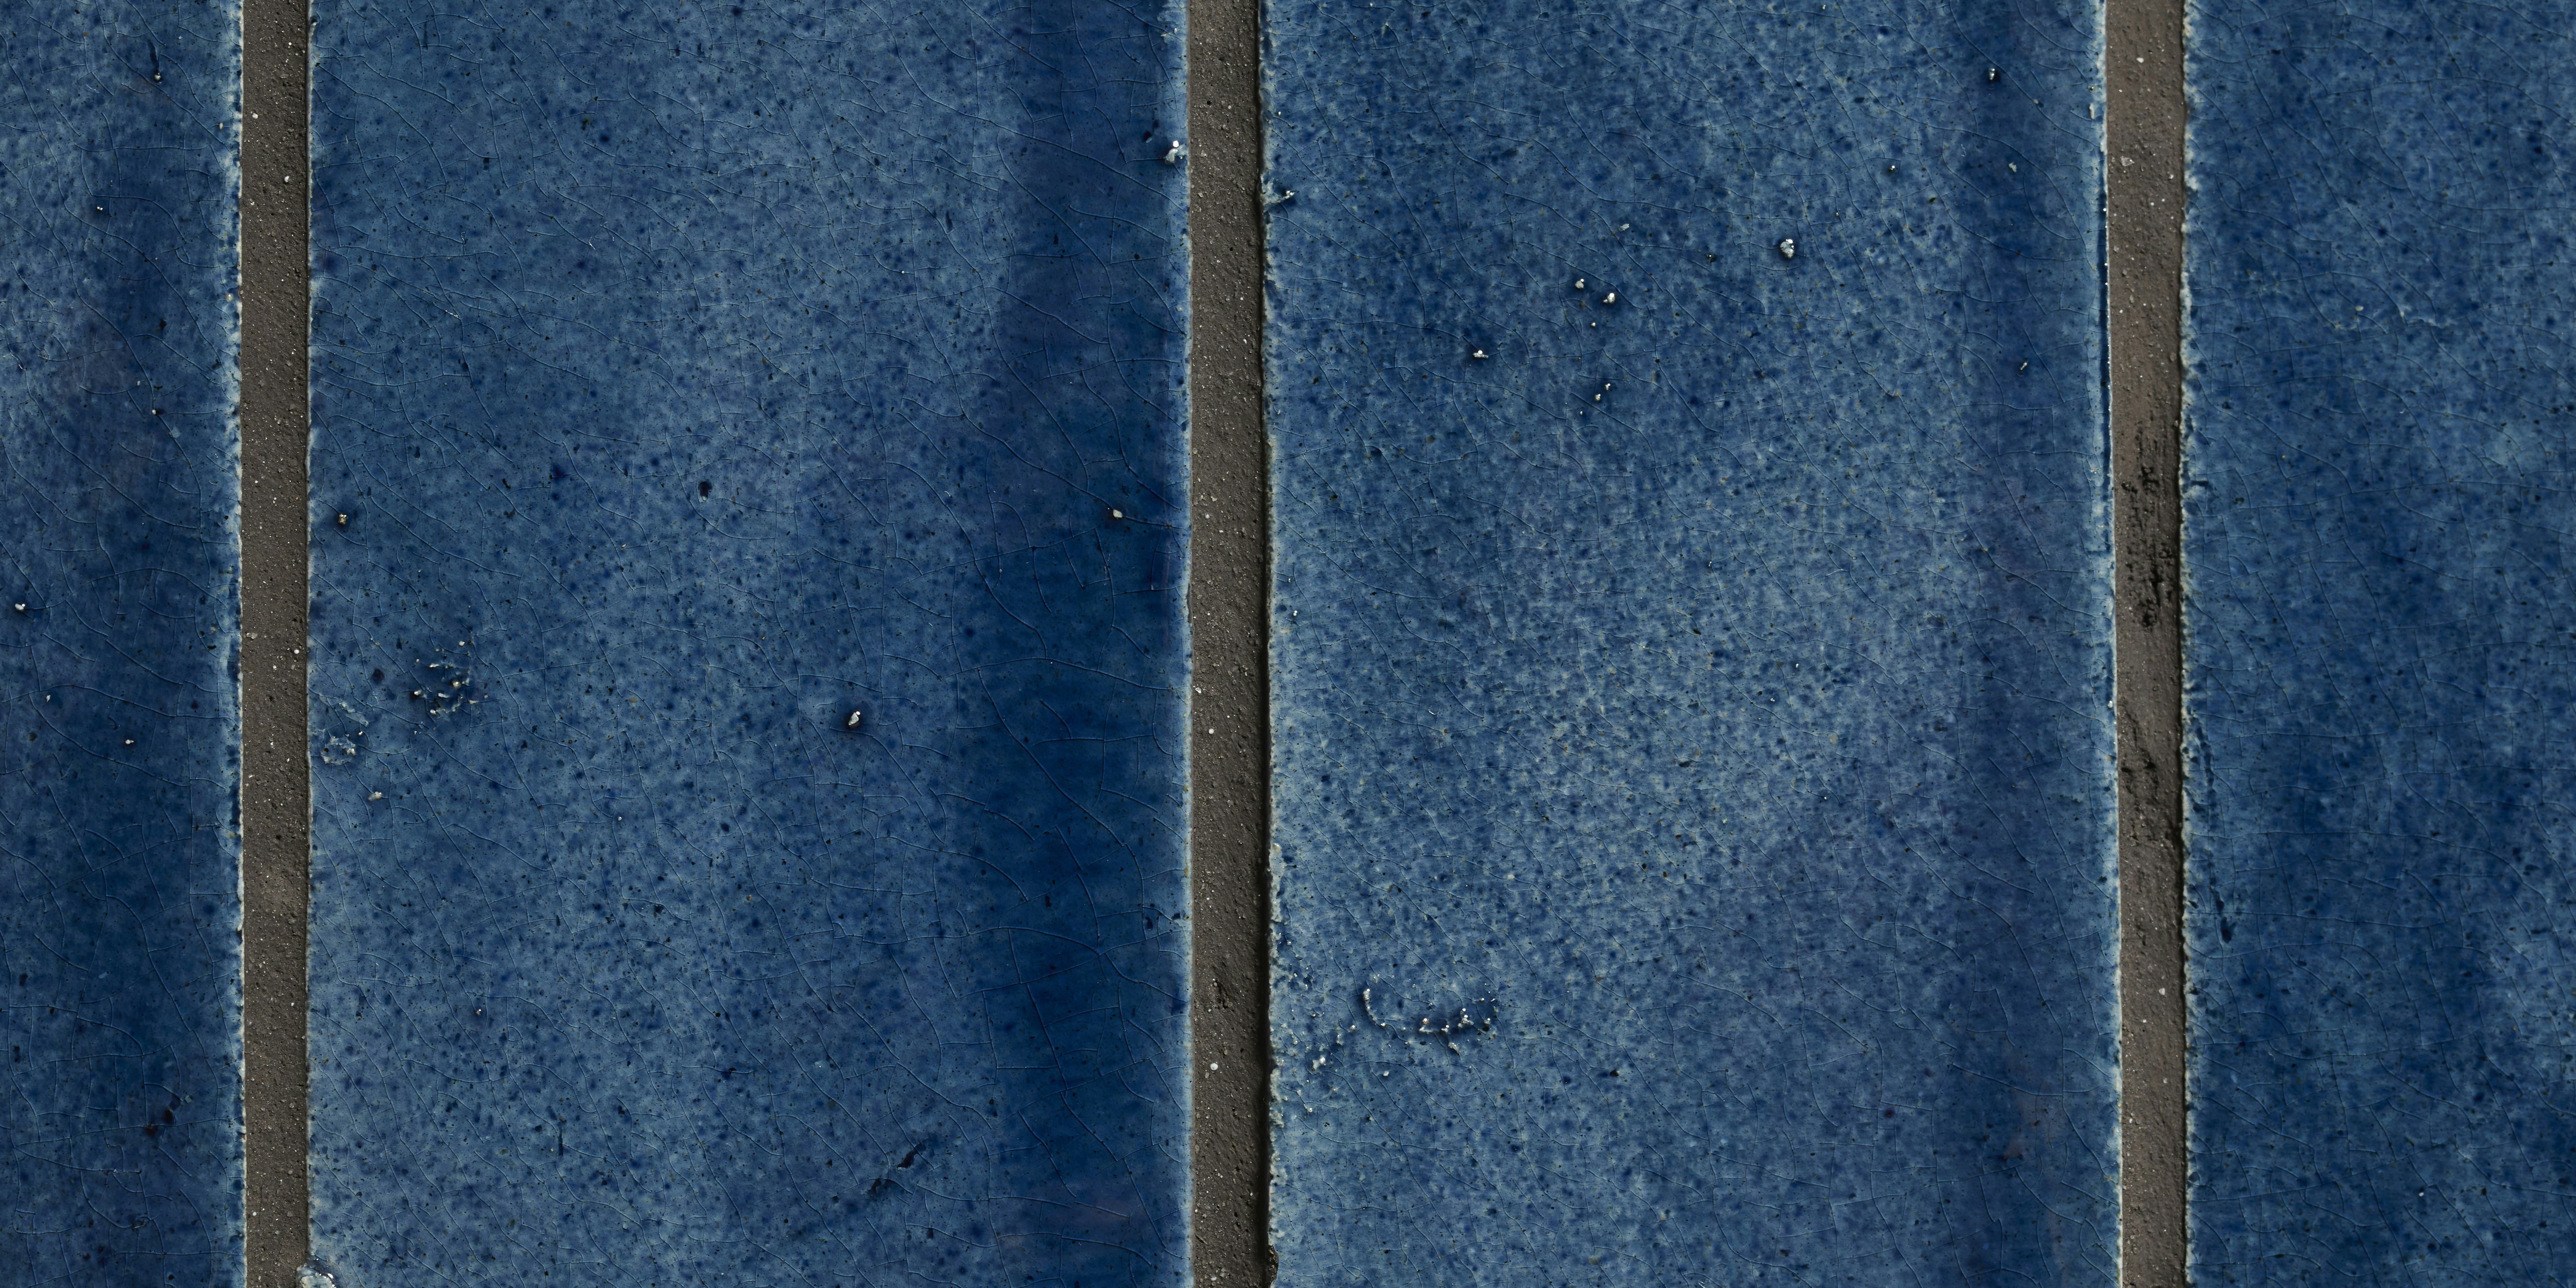 A detail of handmade blue tiles